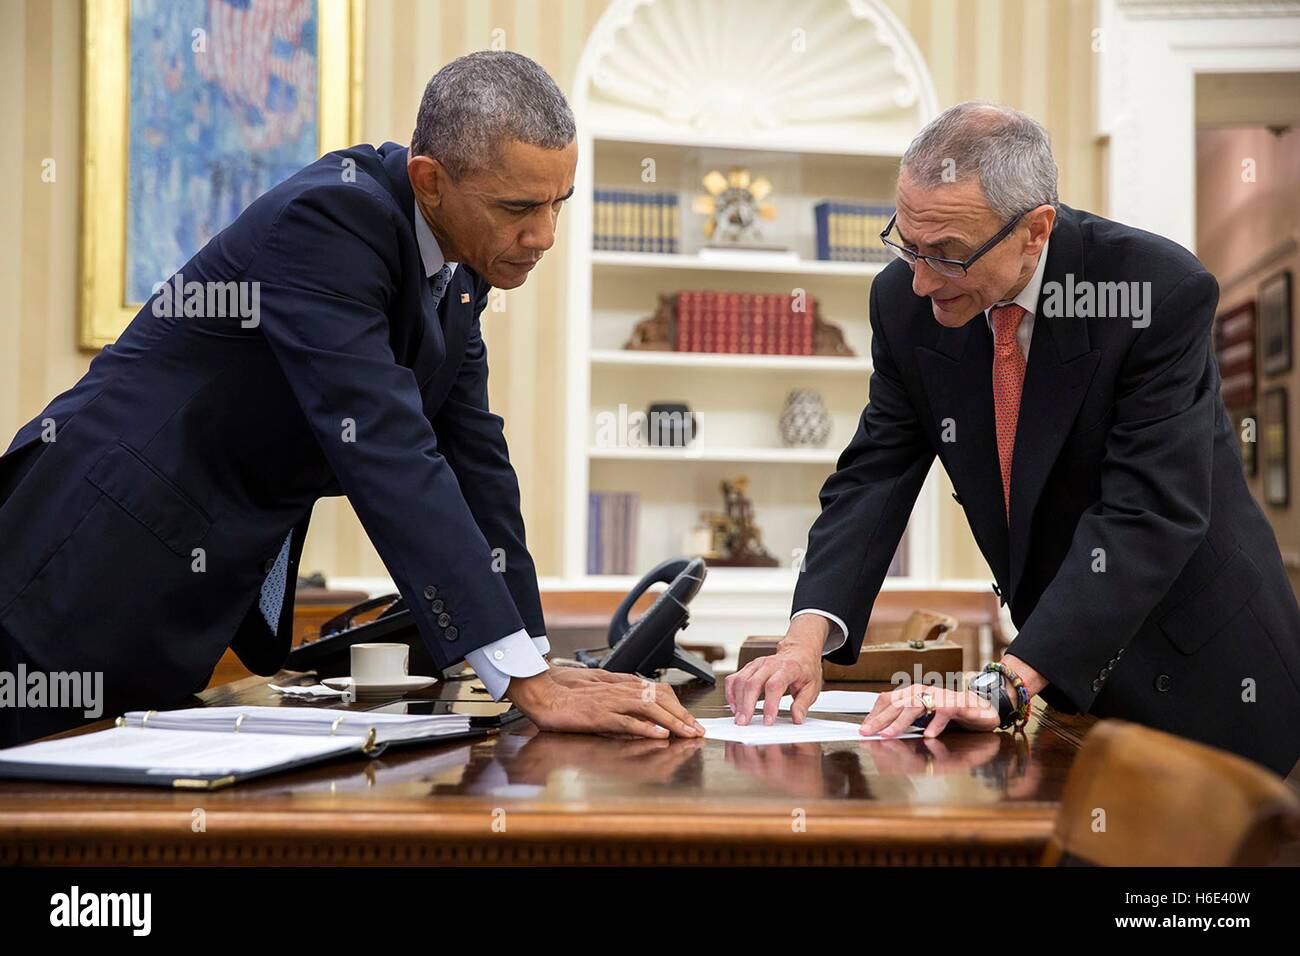 El Presidente de Estados Unidos, Barack Obama, y el consejero presidencial John Podesta reunirse en la Oficina Oval de la Casa Blanca el 29 de enero de 2015 en Washington, DC. Foto de stock